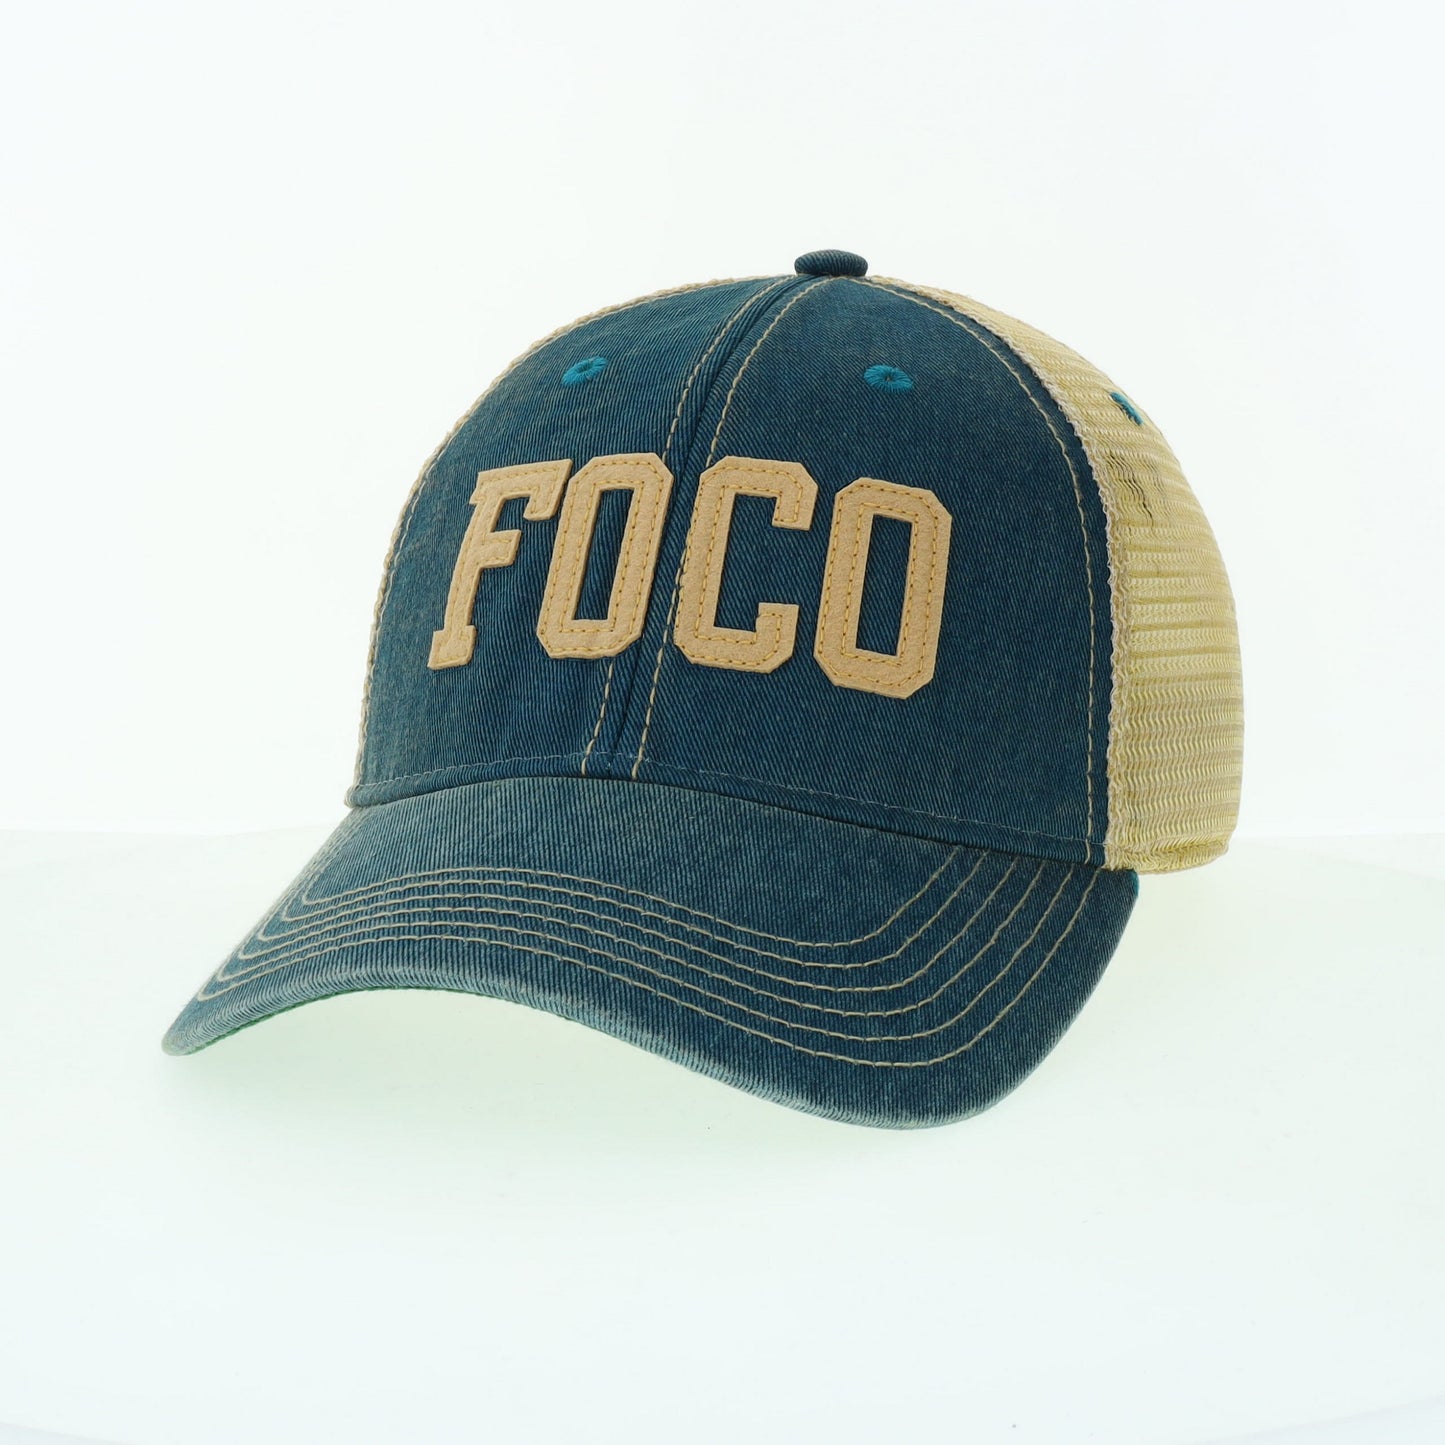 FORT COLLINS COLORADO 'FOCO' TRUCKER HAT - MARINE BLUE